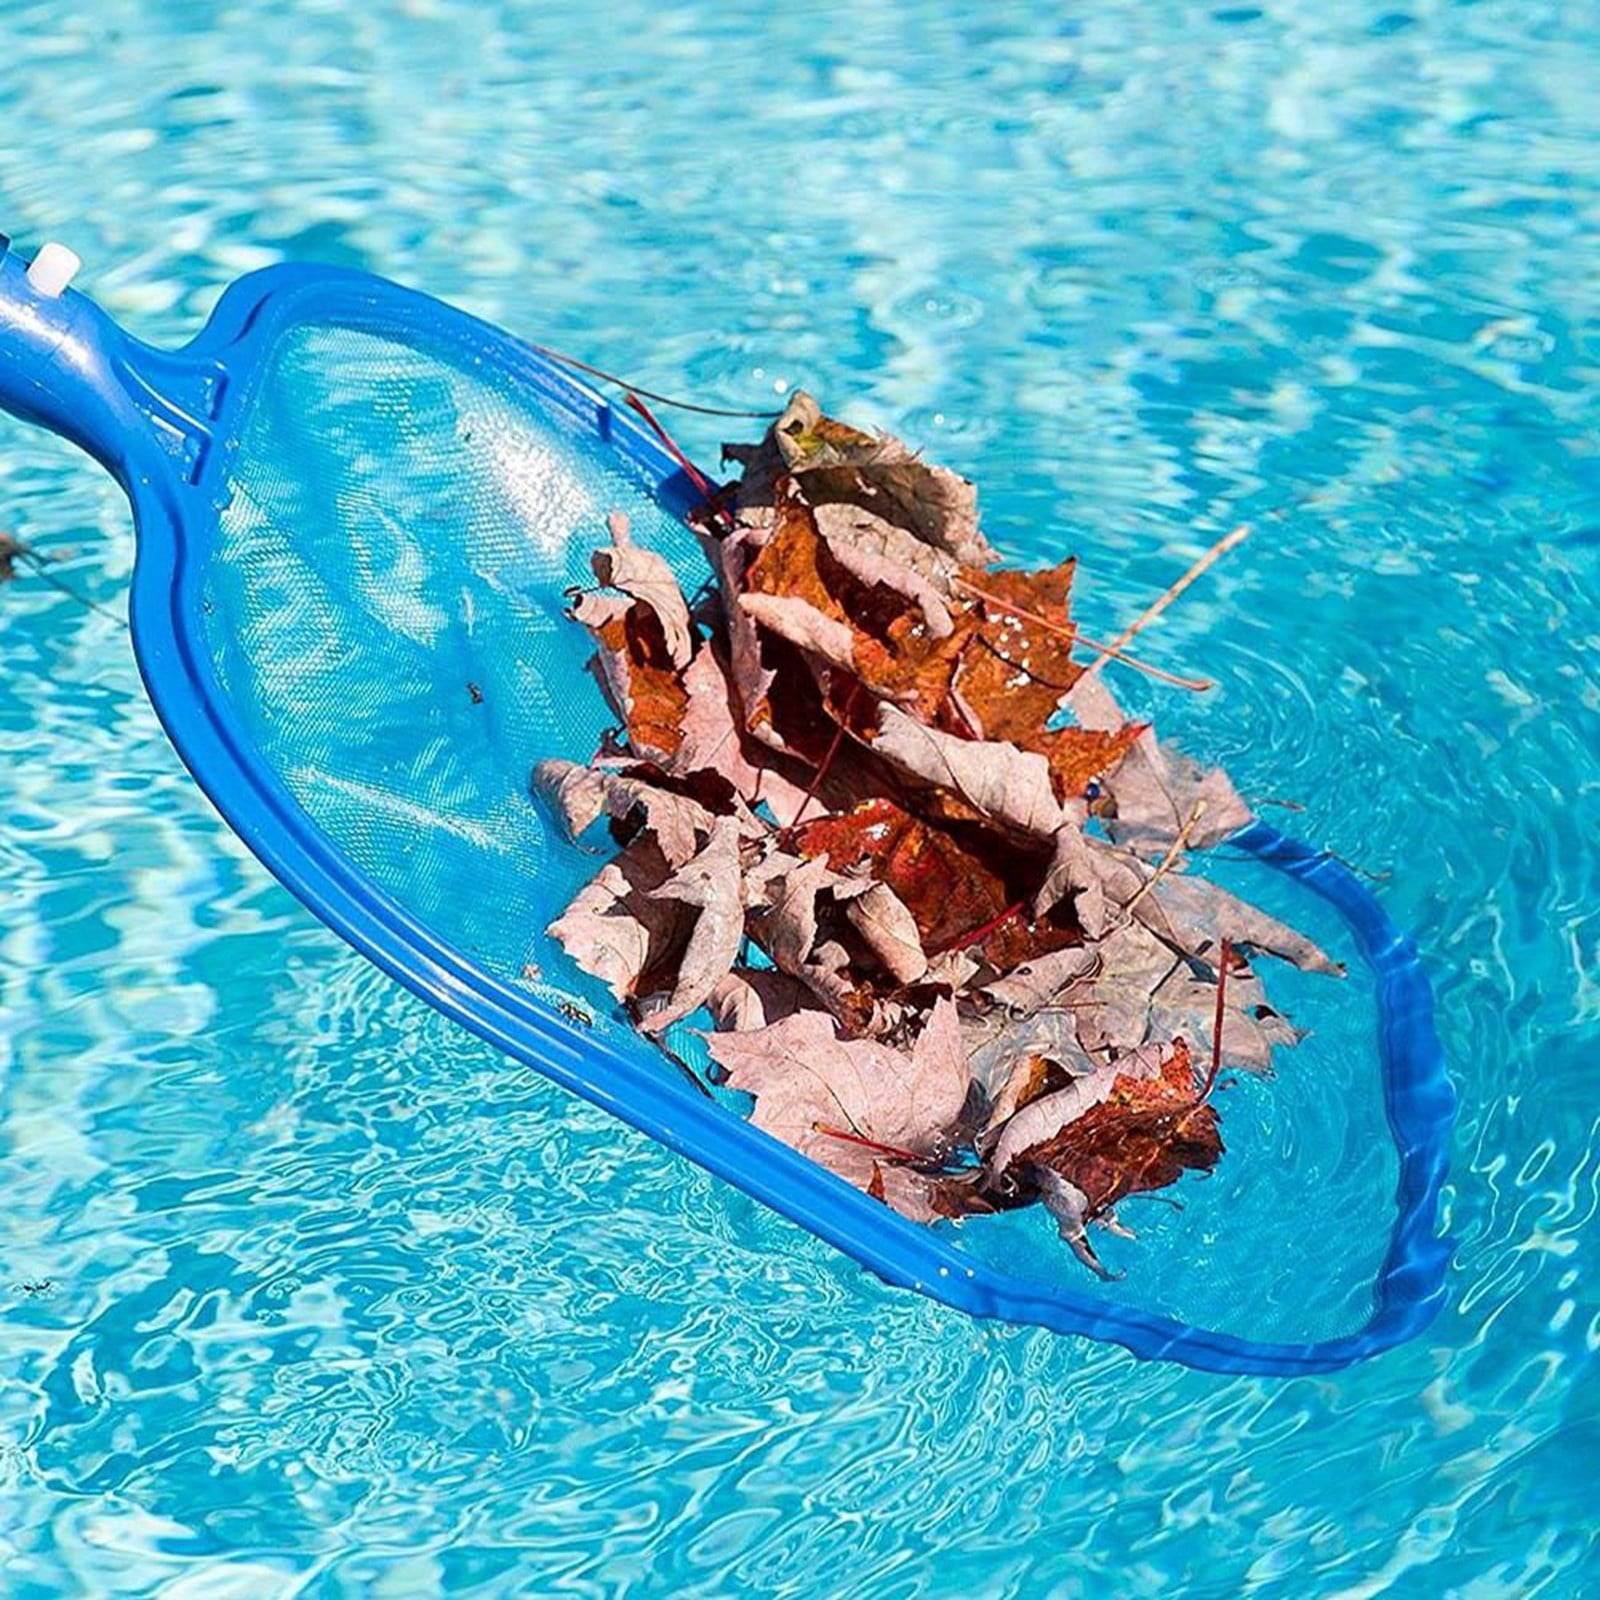 Aqua Swimming Pool Spa Hot Tub Leaf Skimmer Rake  Mesh Frame Cleaning Net Trend 